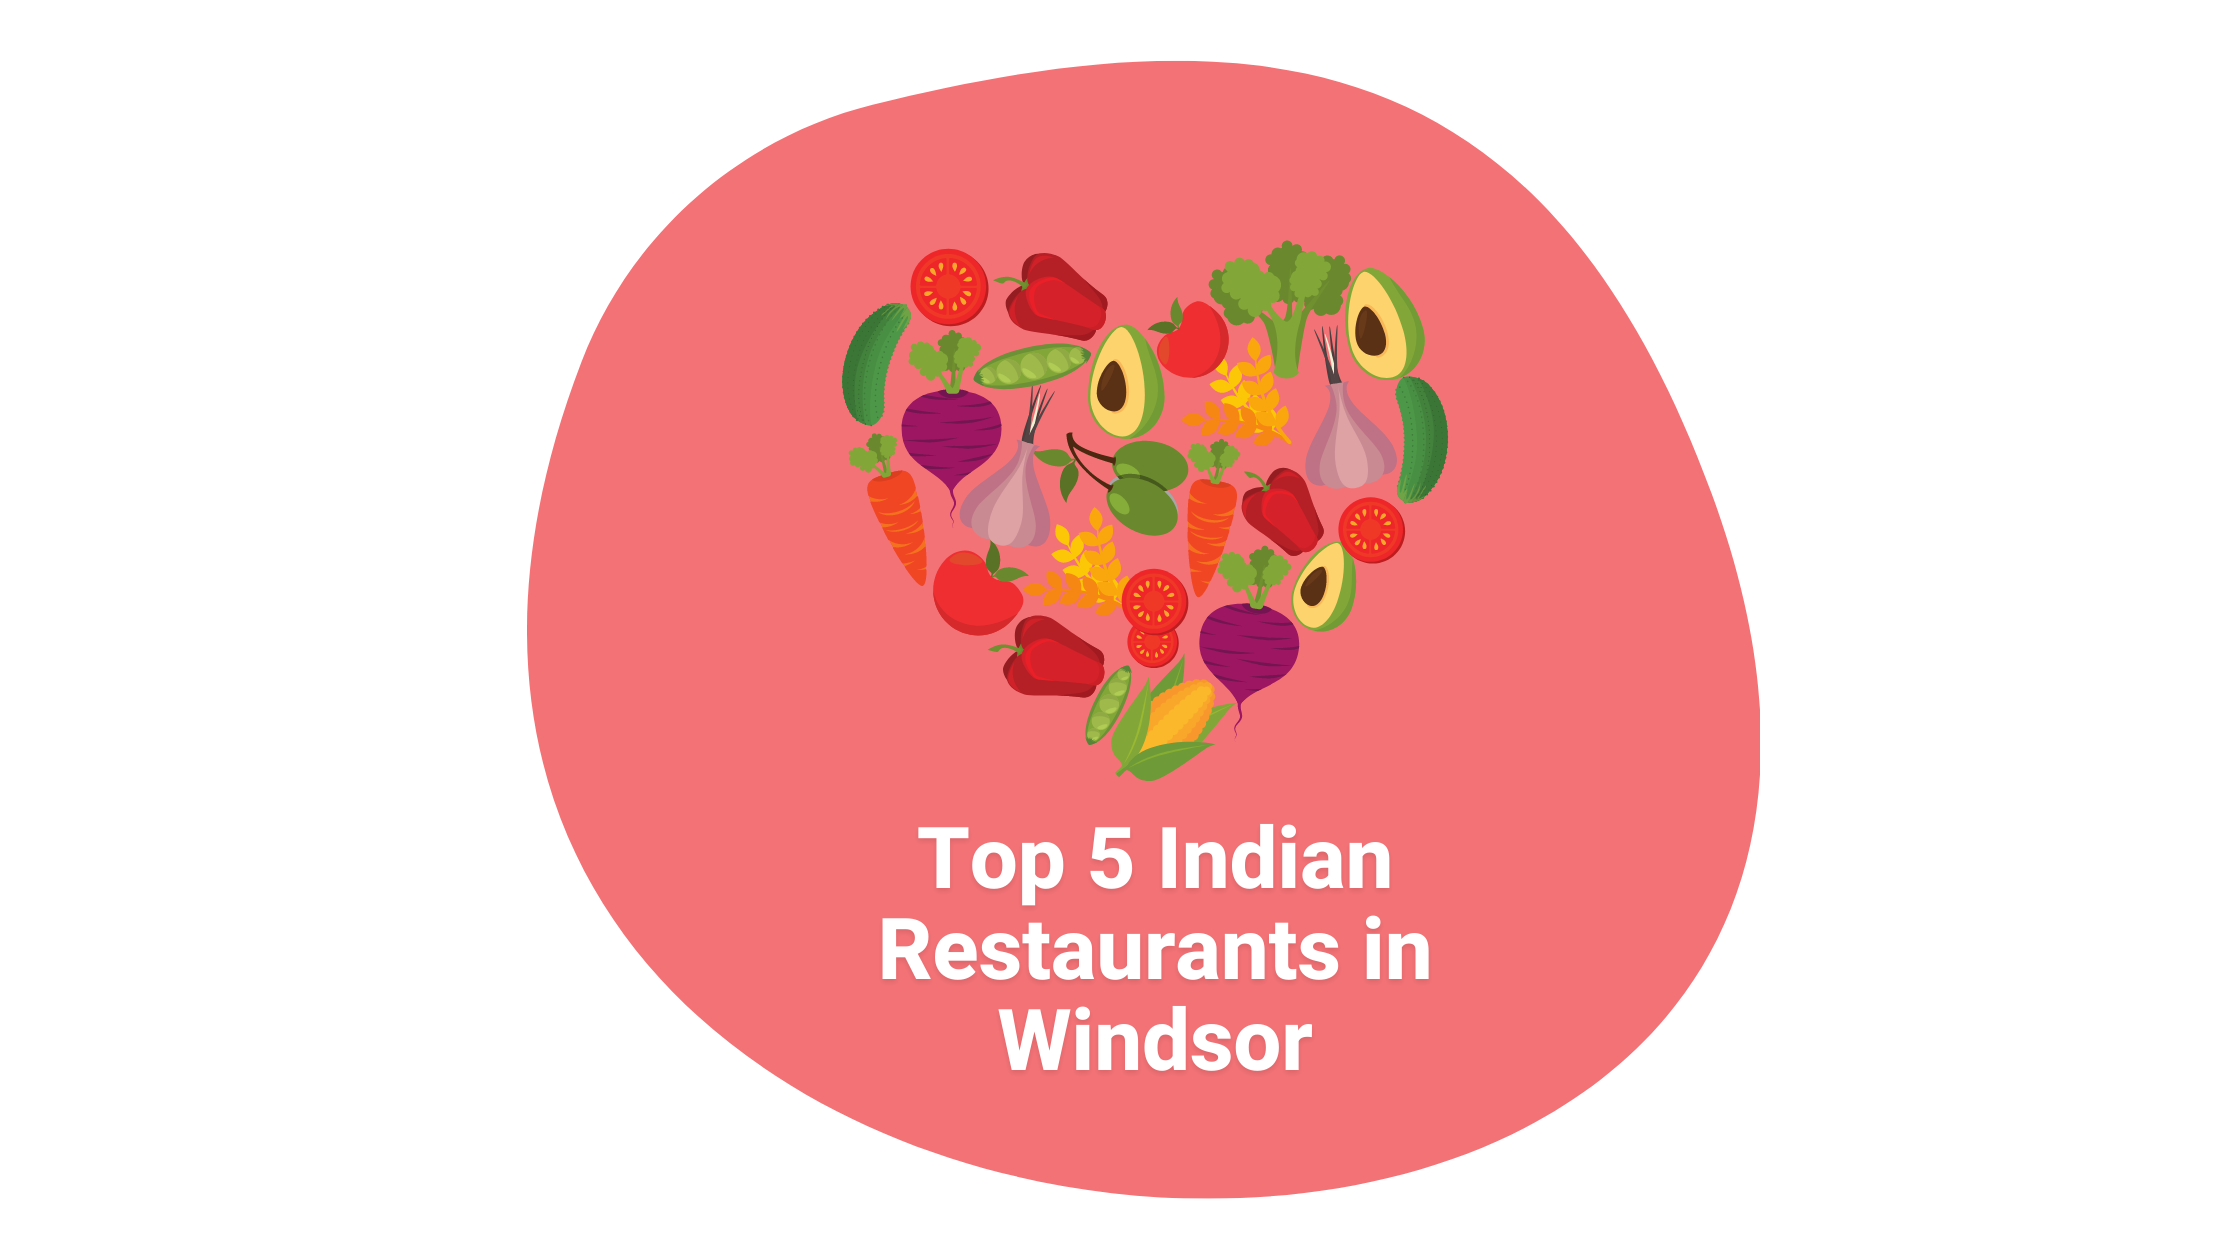 Top 5 Indian Restaurants in Windsor